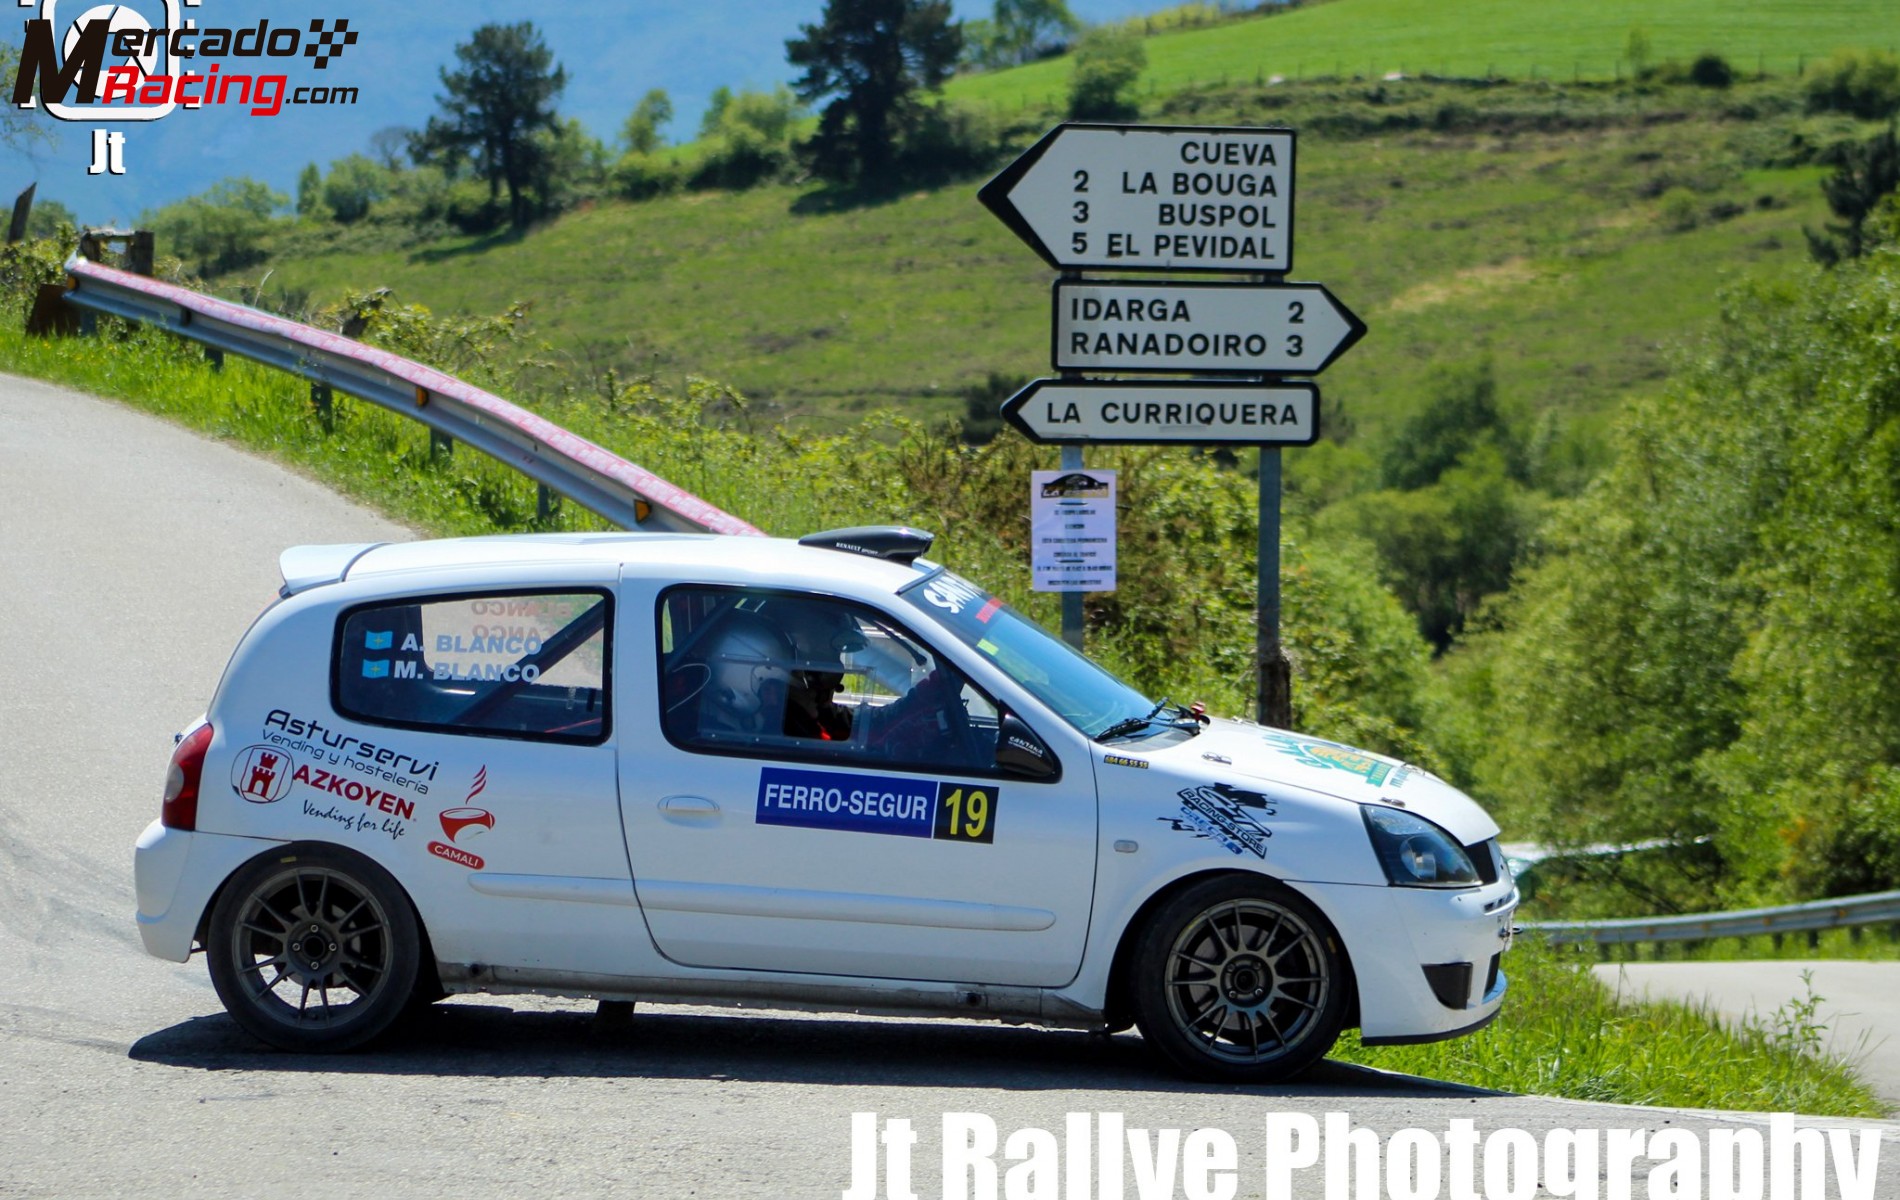 Renault clio sport gr.x/gr.a (asturias)